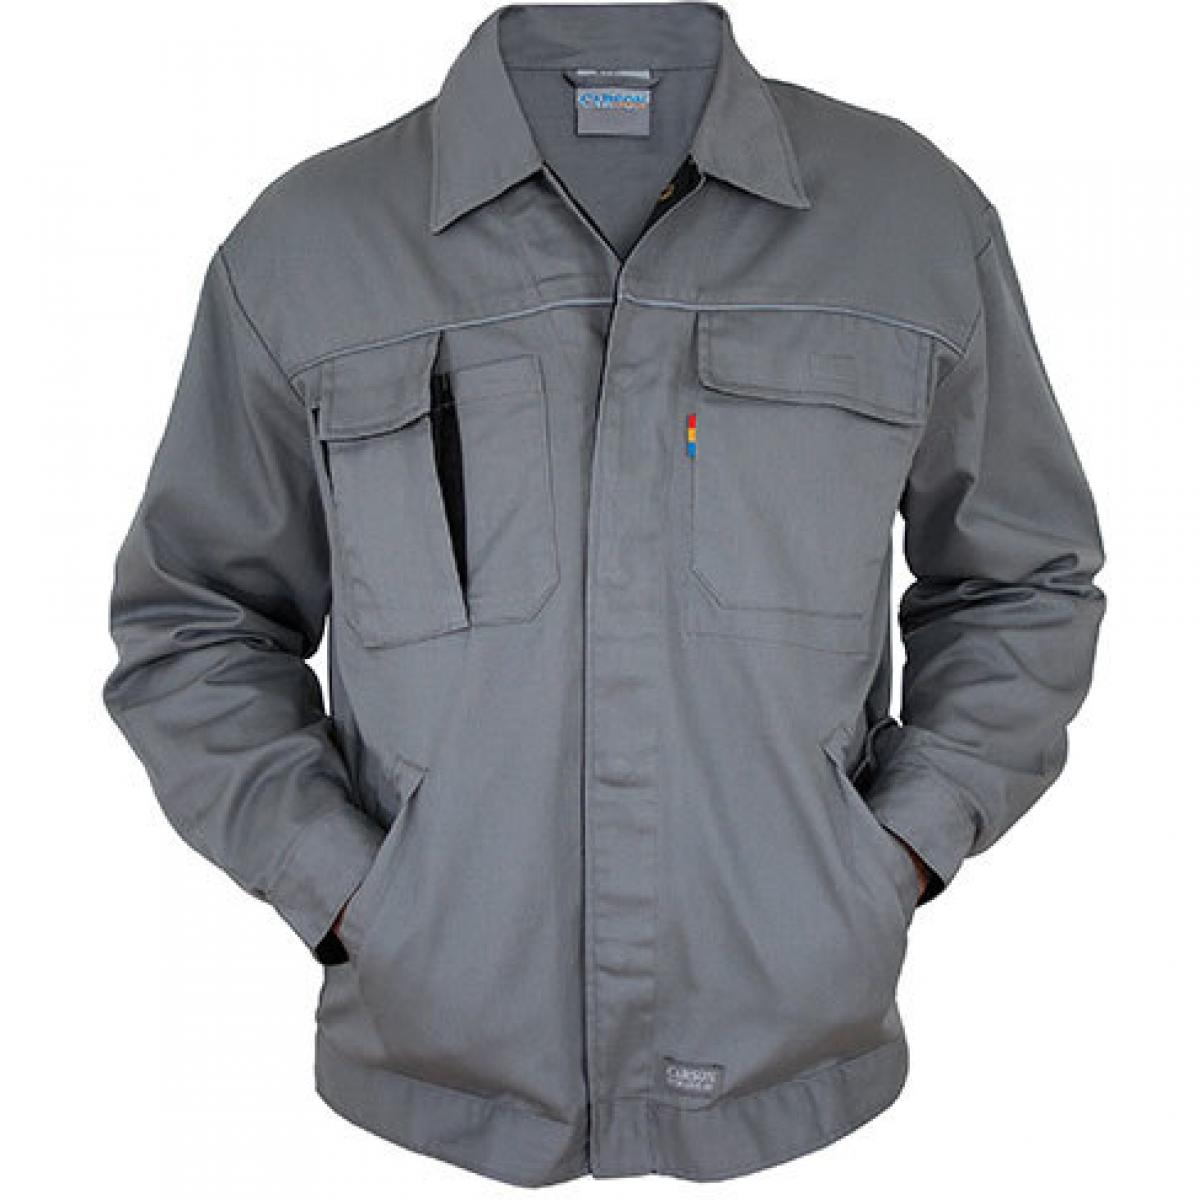 Hersteller: Carson Contrast Herstellernummer: CC710 Artikelbezeichnung: Herren Contrast Work Jacket / Bei 60 Grad waschbar Farbe: Grey/Black